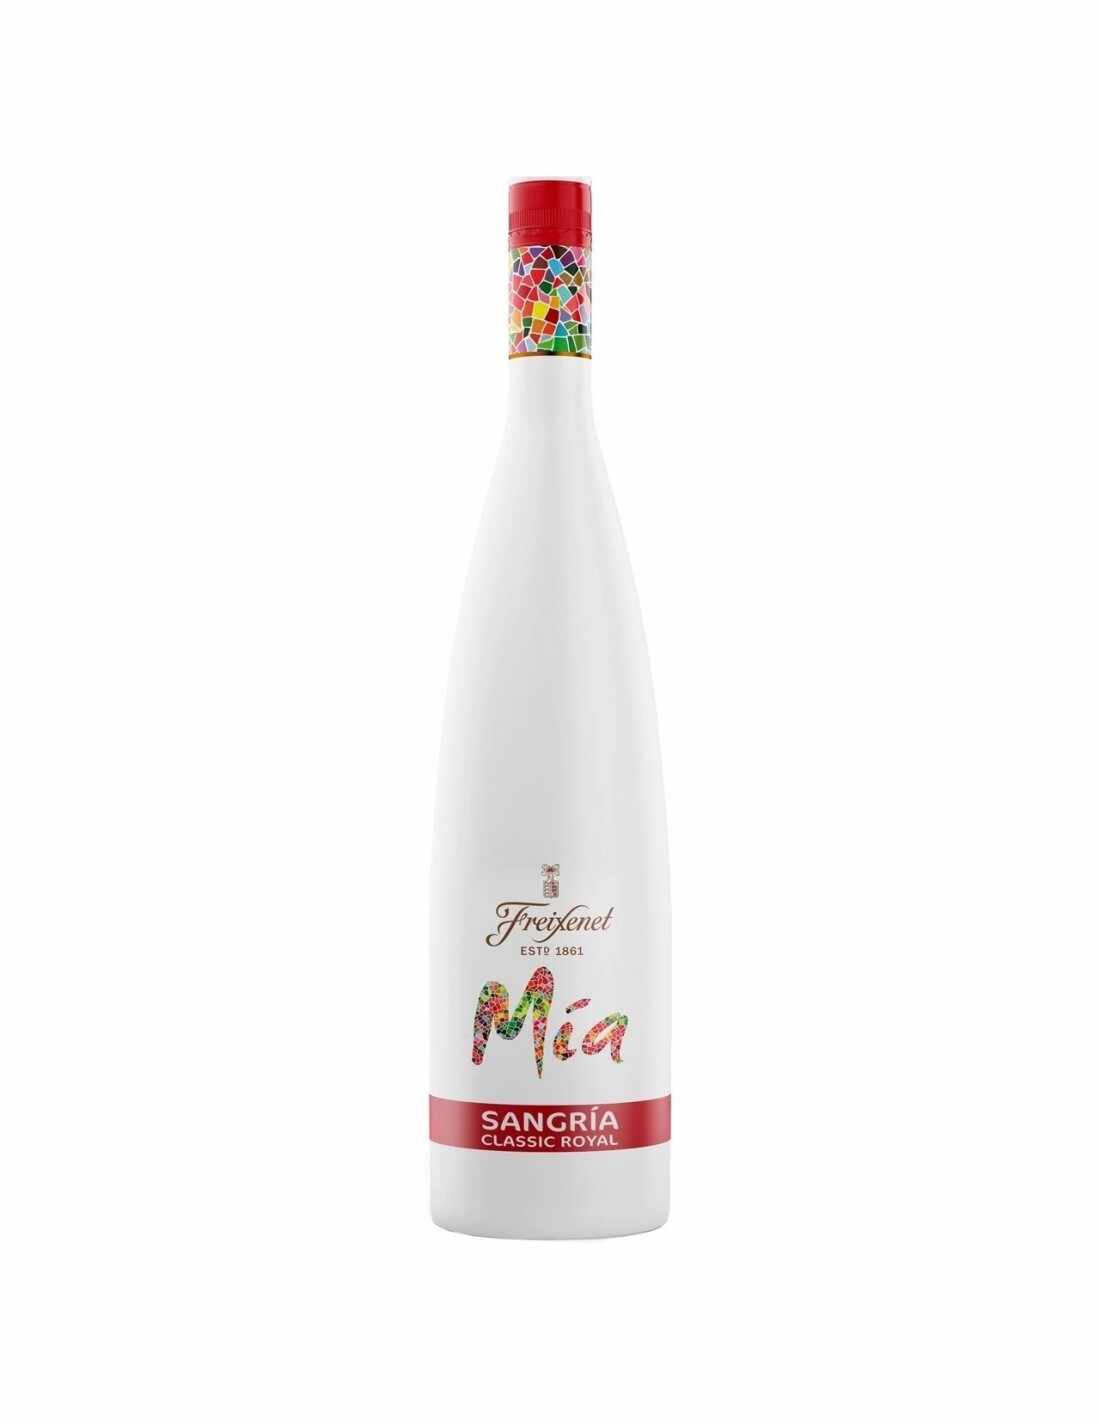 Cocktail Sangria, Freixenet Mia Classic Royal, 8.5% alc., 0.75L, Spania